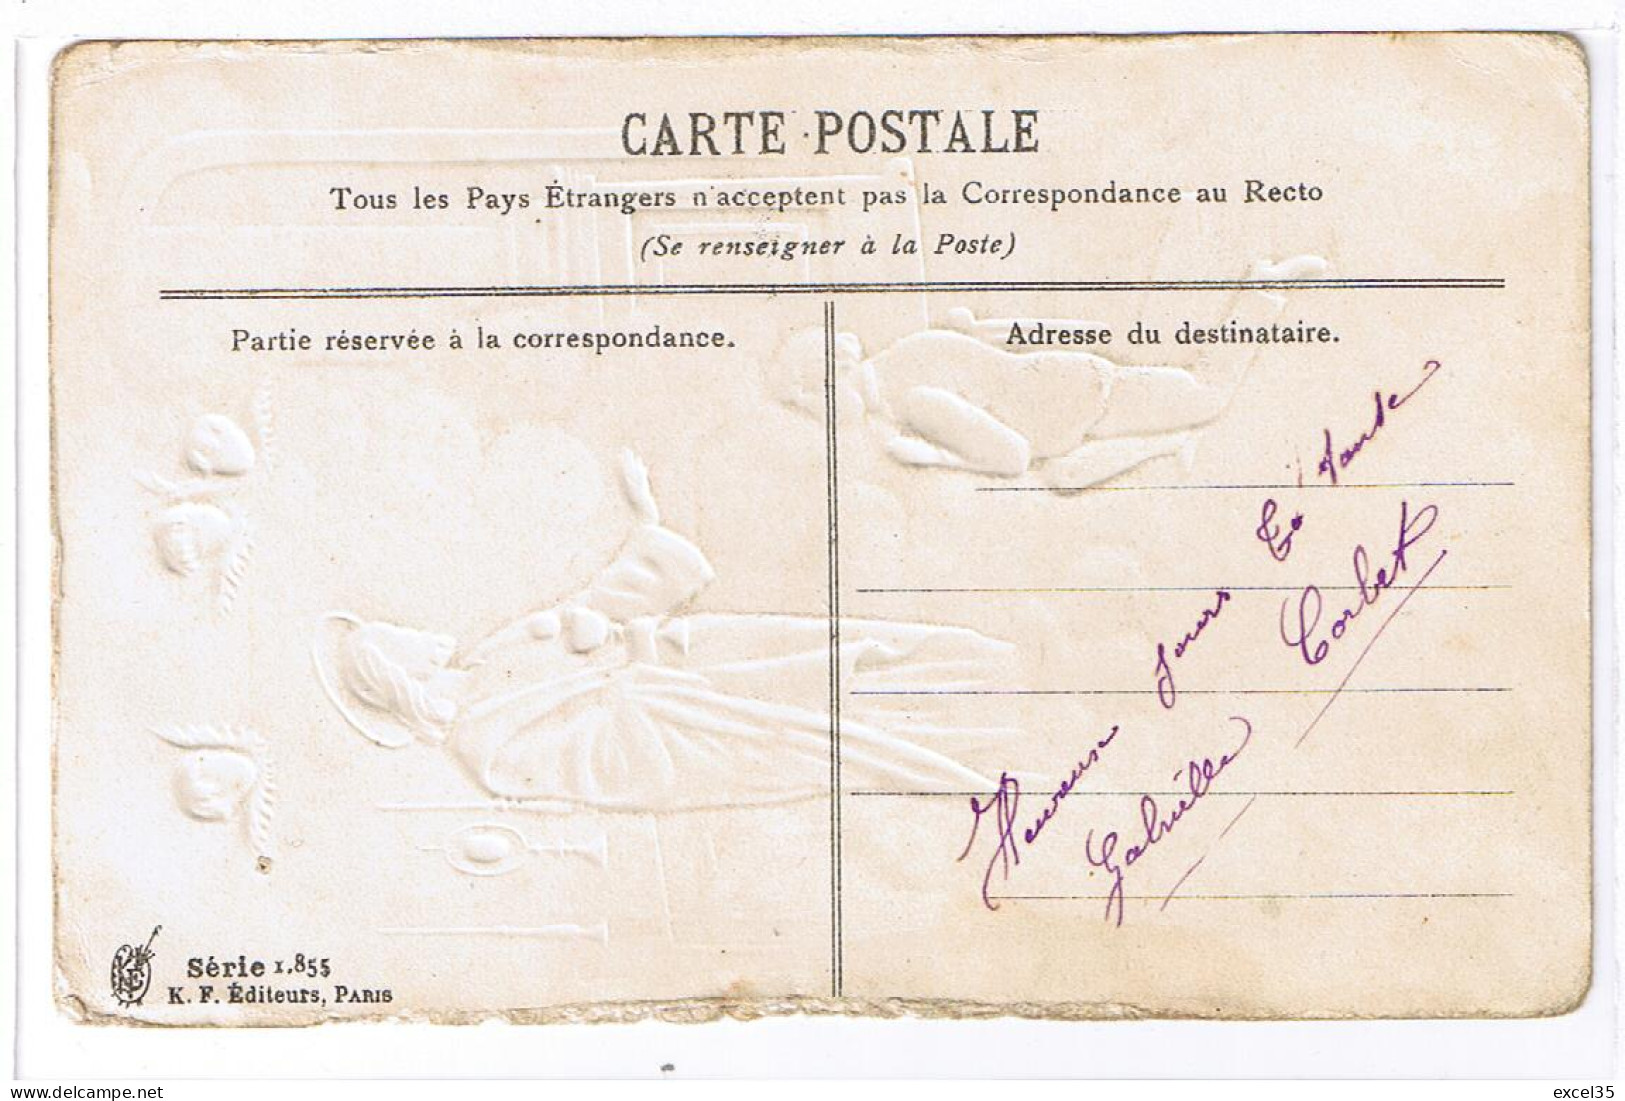 Souvenir De Première Communion Motifs En Relief Par Gaufrage - K F Editeurs, Paris - Série 1.855 - Kommunion